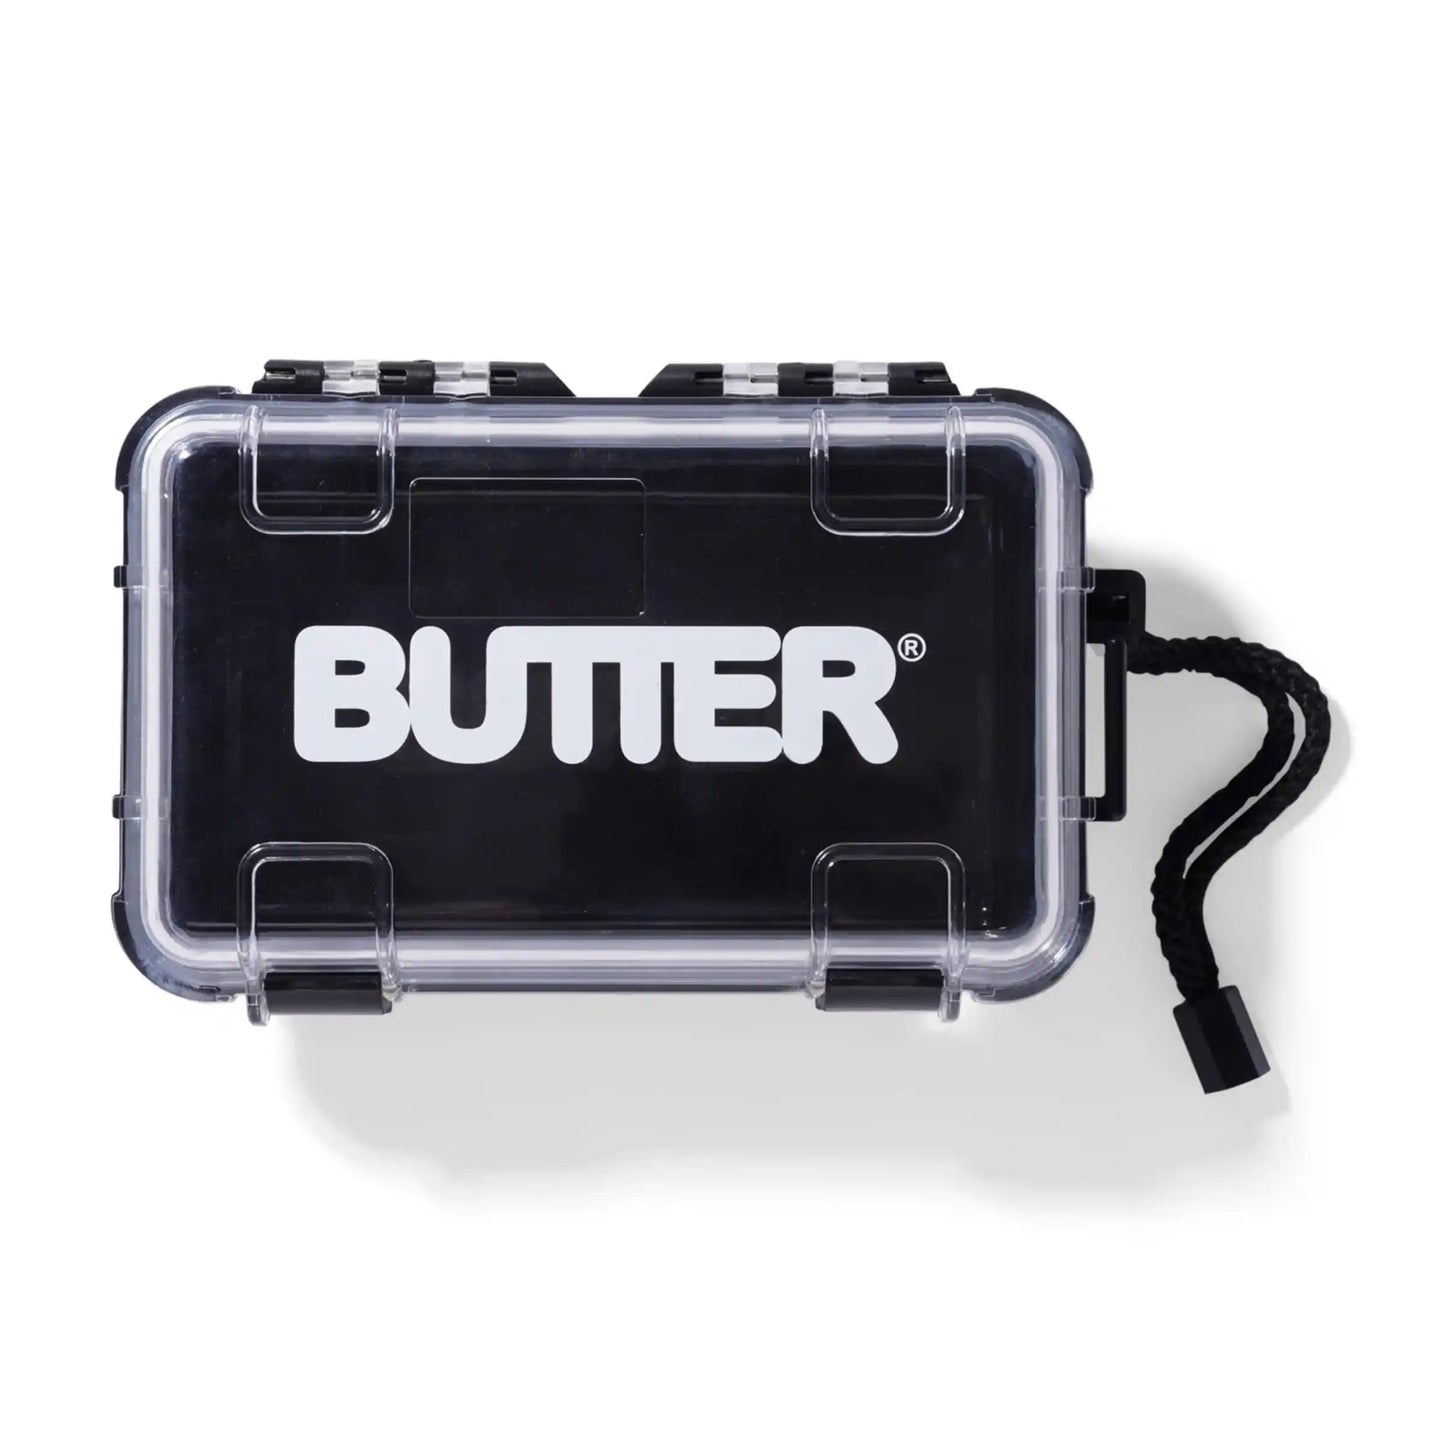 Butter Goods Logo Plastic Case, black - Tiki Room Skateboards - 1